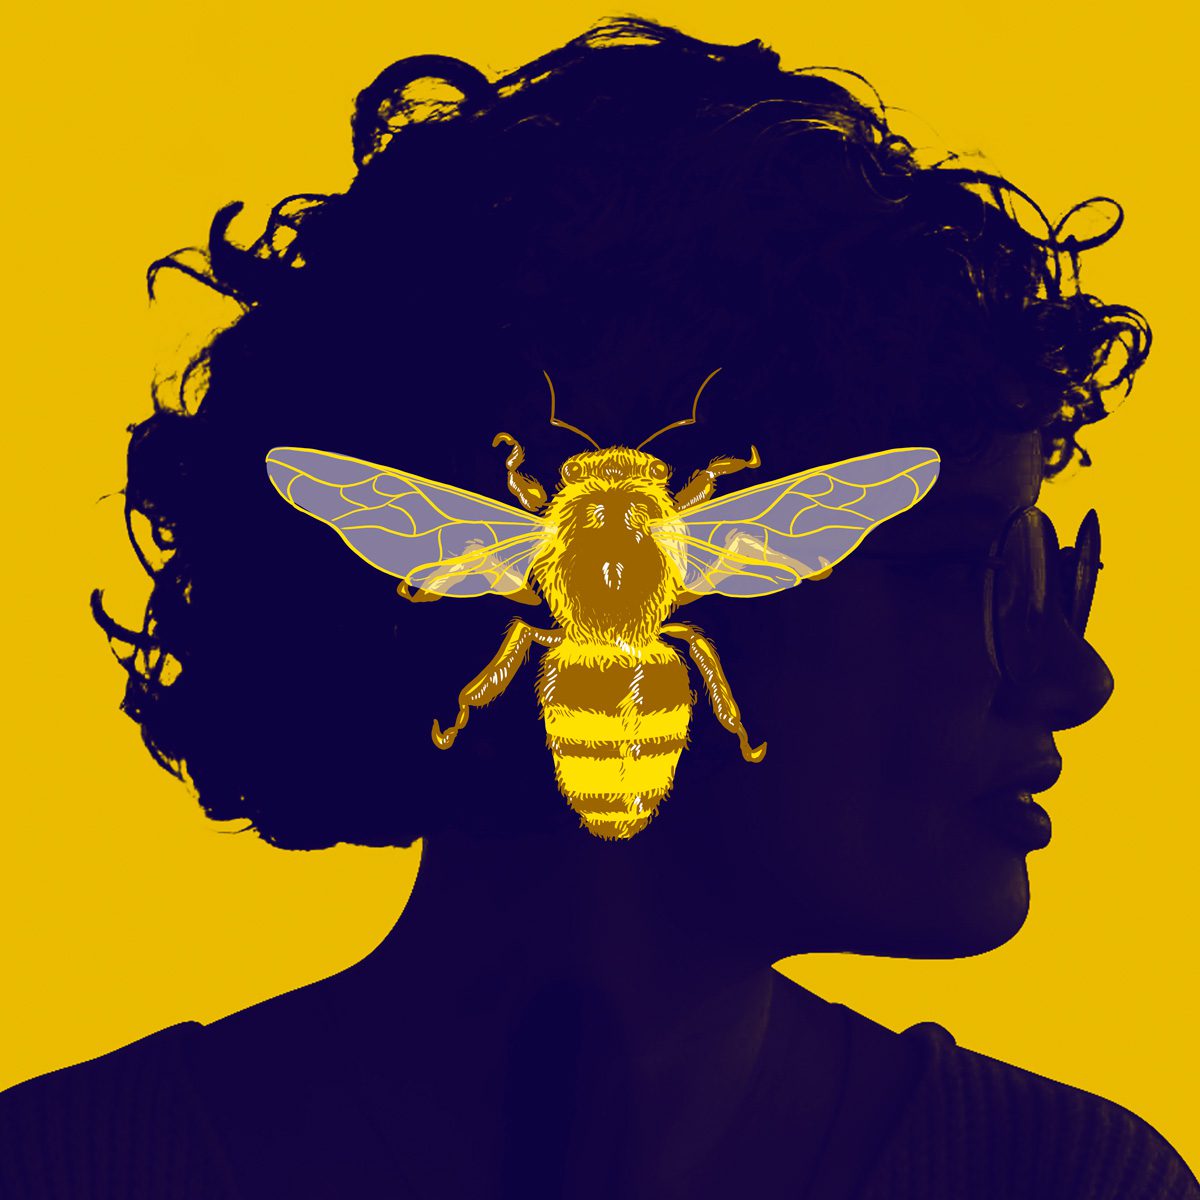 Fundo amarelo, Aline Valek de perfil, com efeito azulado e foco na silhueta. Uma ilustração de abelha amarela está em cima da imagem.